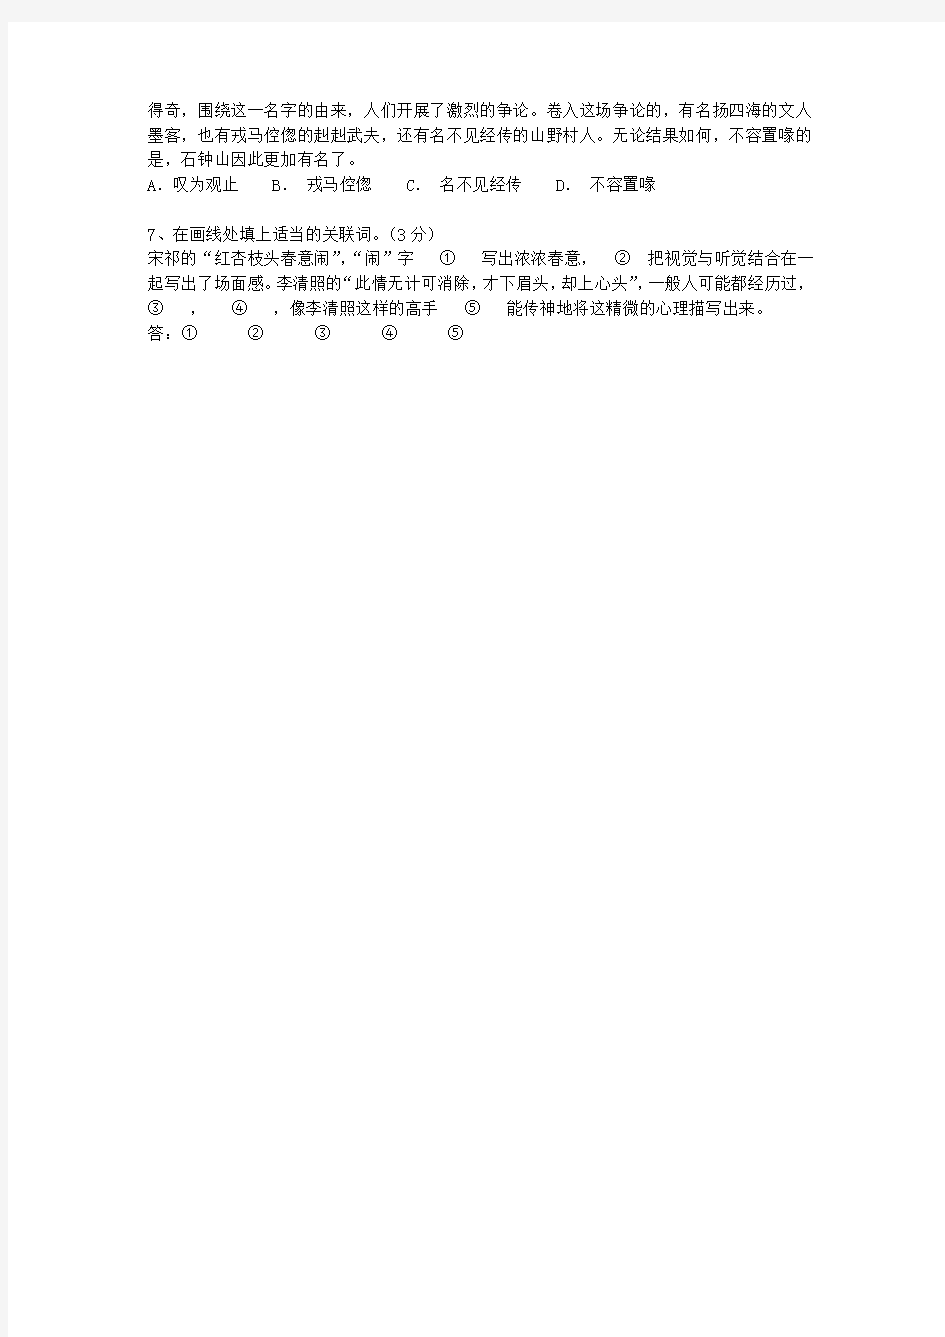 2013广东省高考语文试卷答案、考点详解以及2016预测考试技巧、答题原则